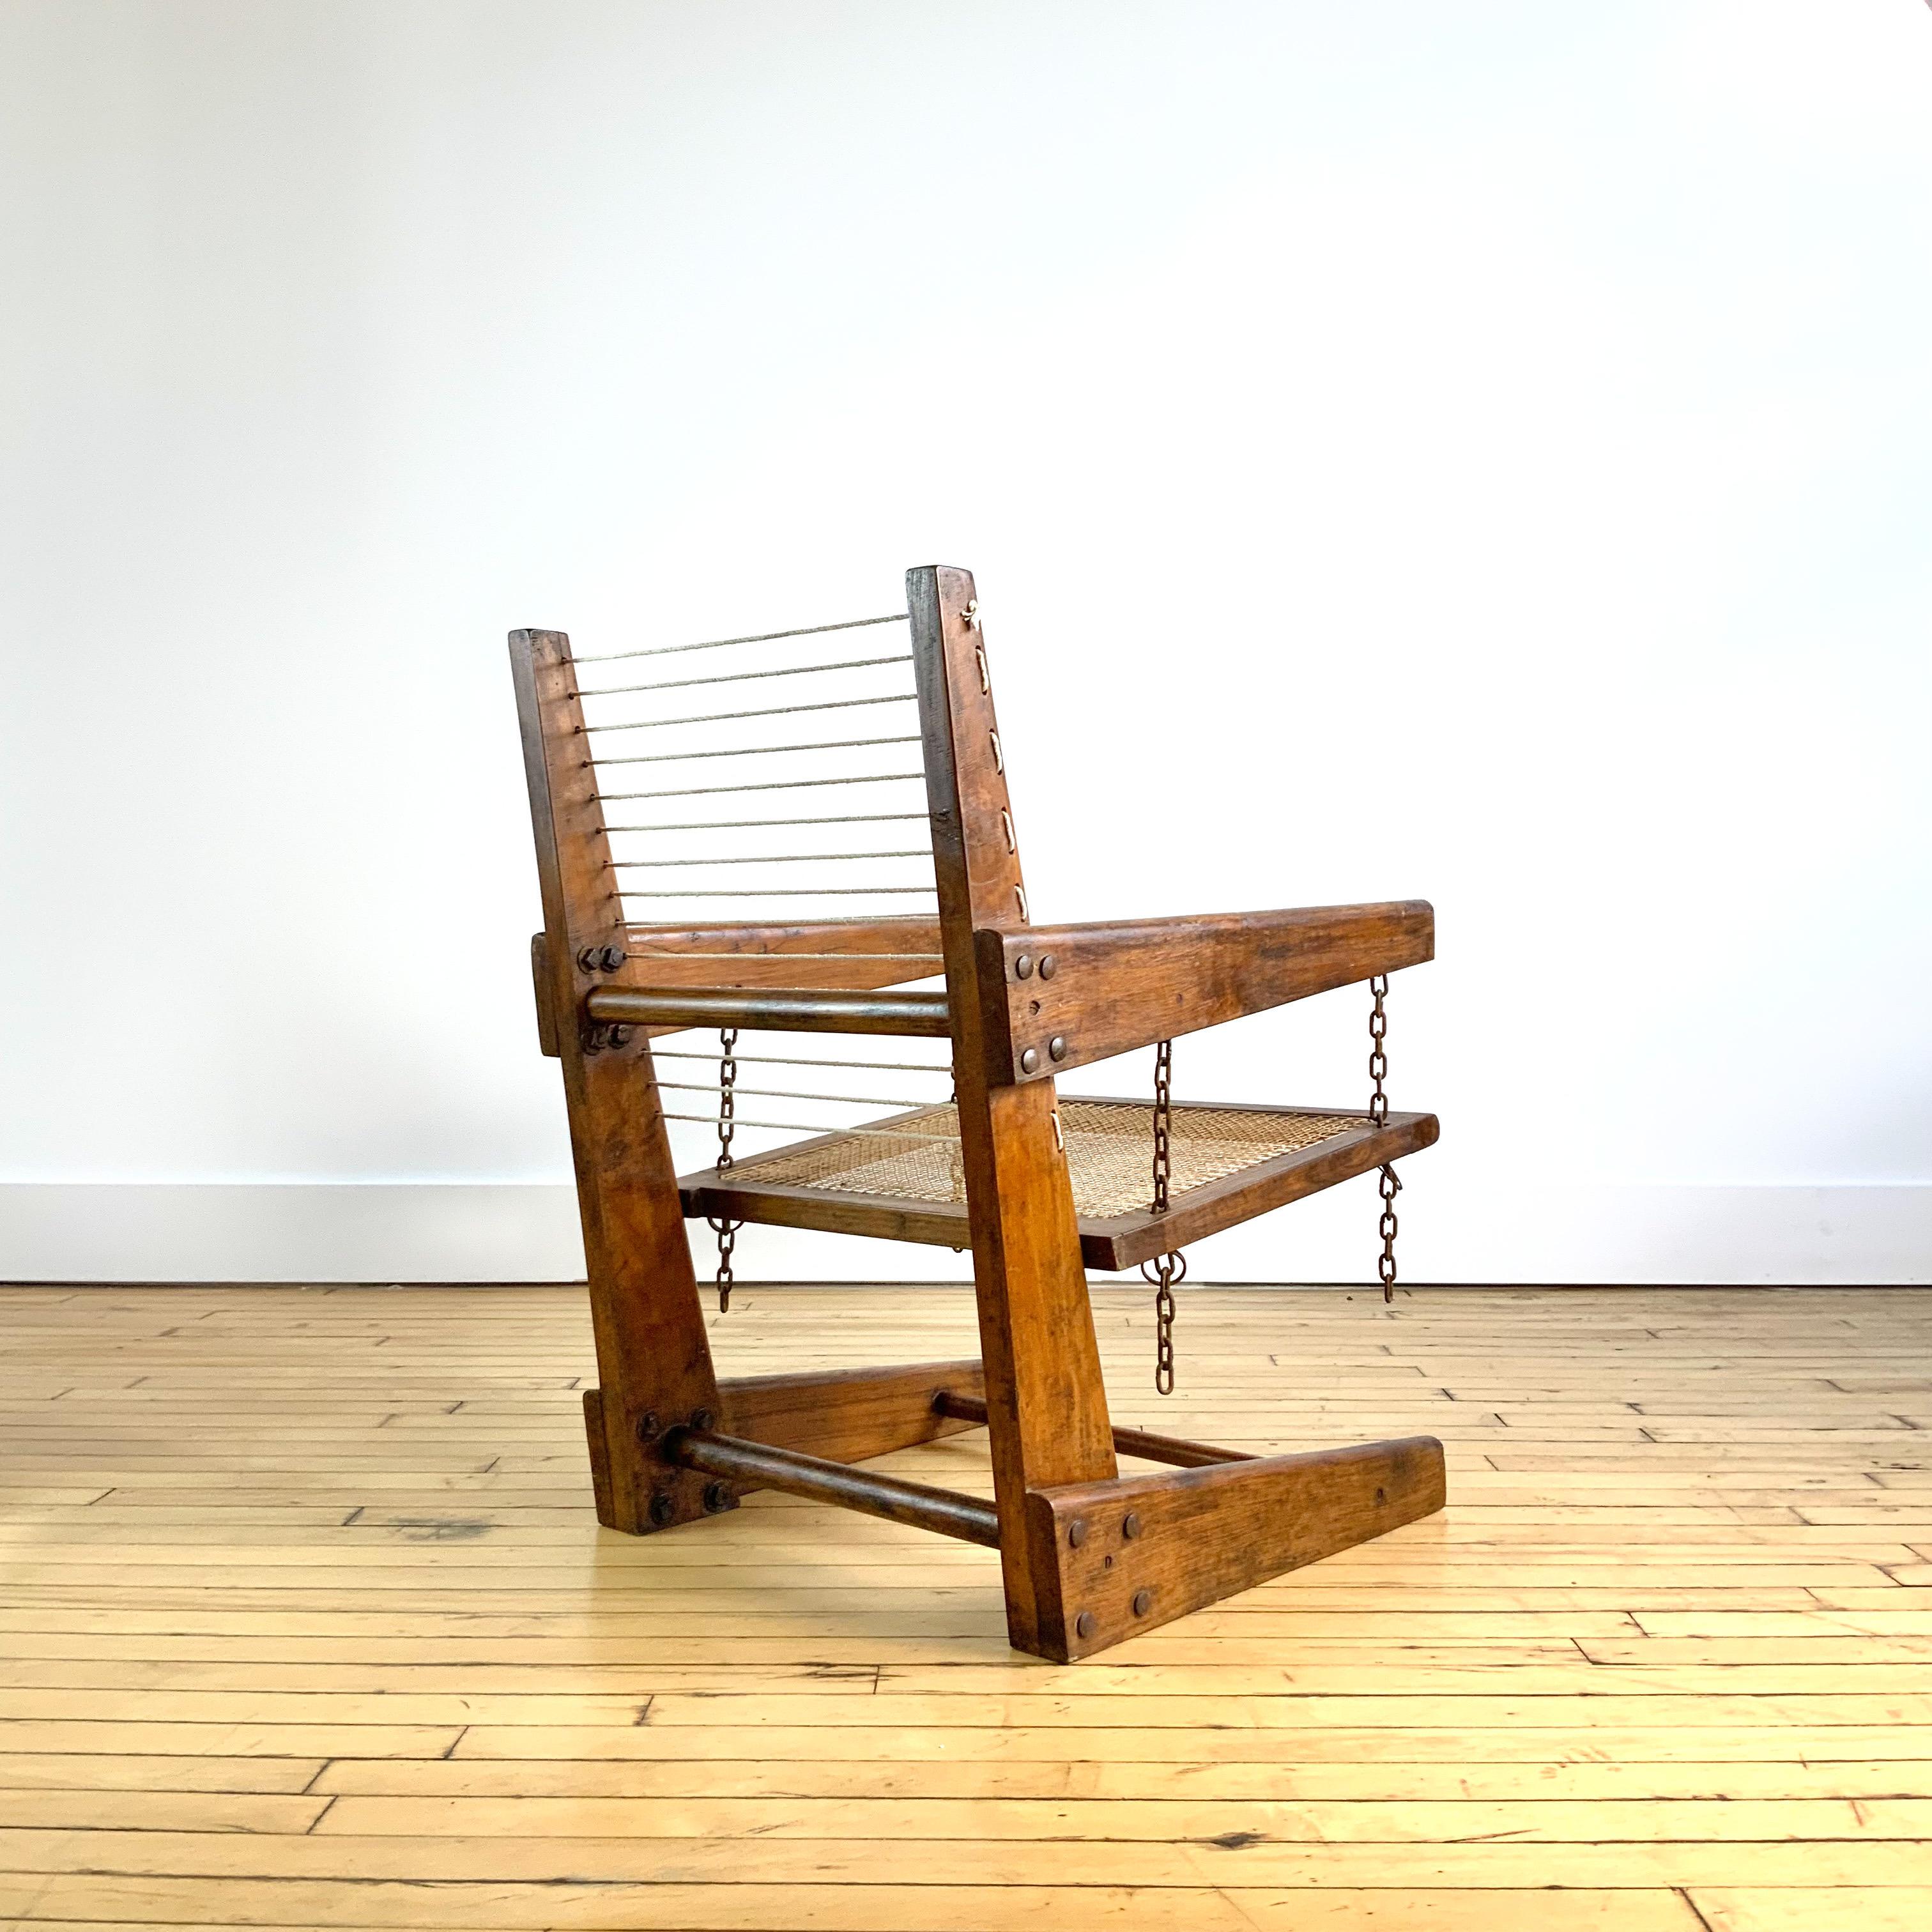 Einer der frühesten und seltensten Stühle aus dem Chandigarh-Projekt, Modell PJ-SI-07-A,

Dieser Stuhl ist eine der ersten Kreationen von Pierre Jeanneret, als er in Chandigarh ankam. Er nutzte sie für sich selbst und für seine Mitarbeiter. Das